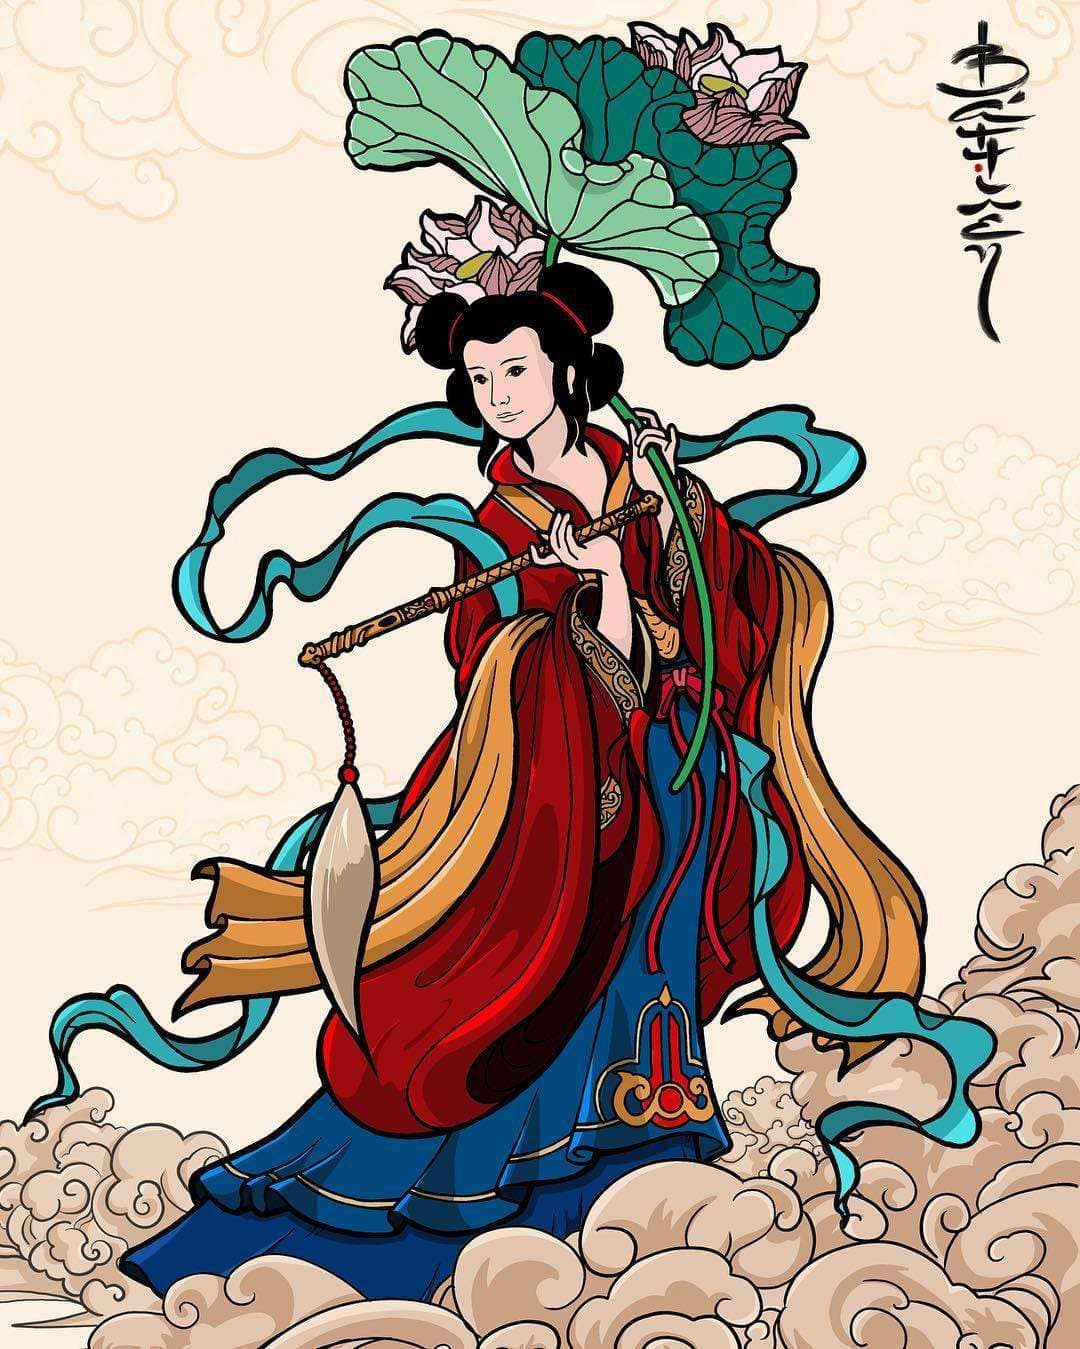 Bát Tiên  truyền thuyết phong thủy và đề tài nghệ thuật   Khanhhoathuyngas collection Blog  An Asian art info blog